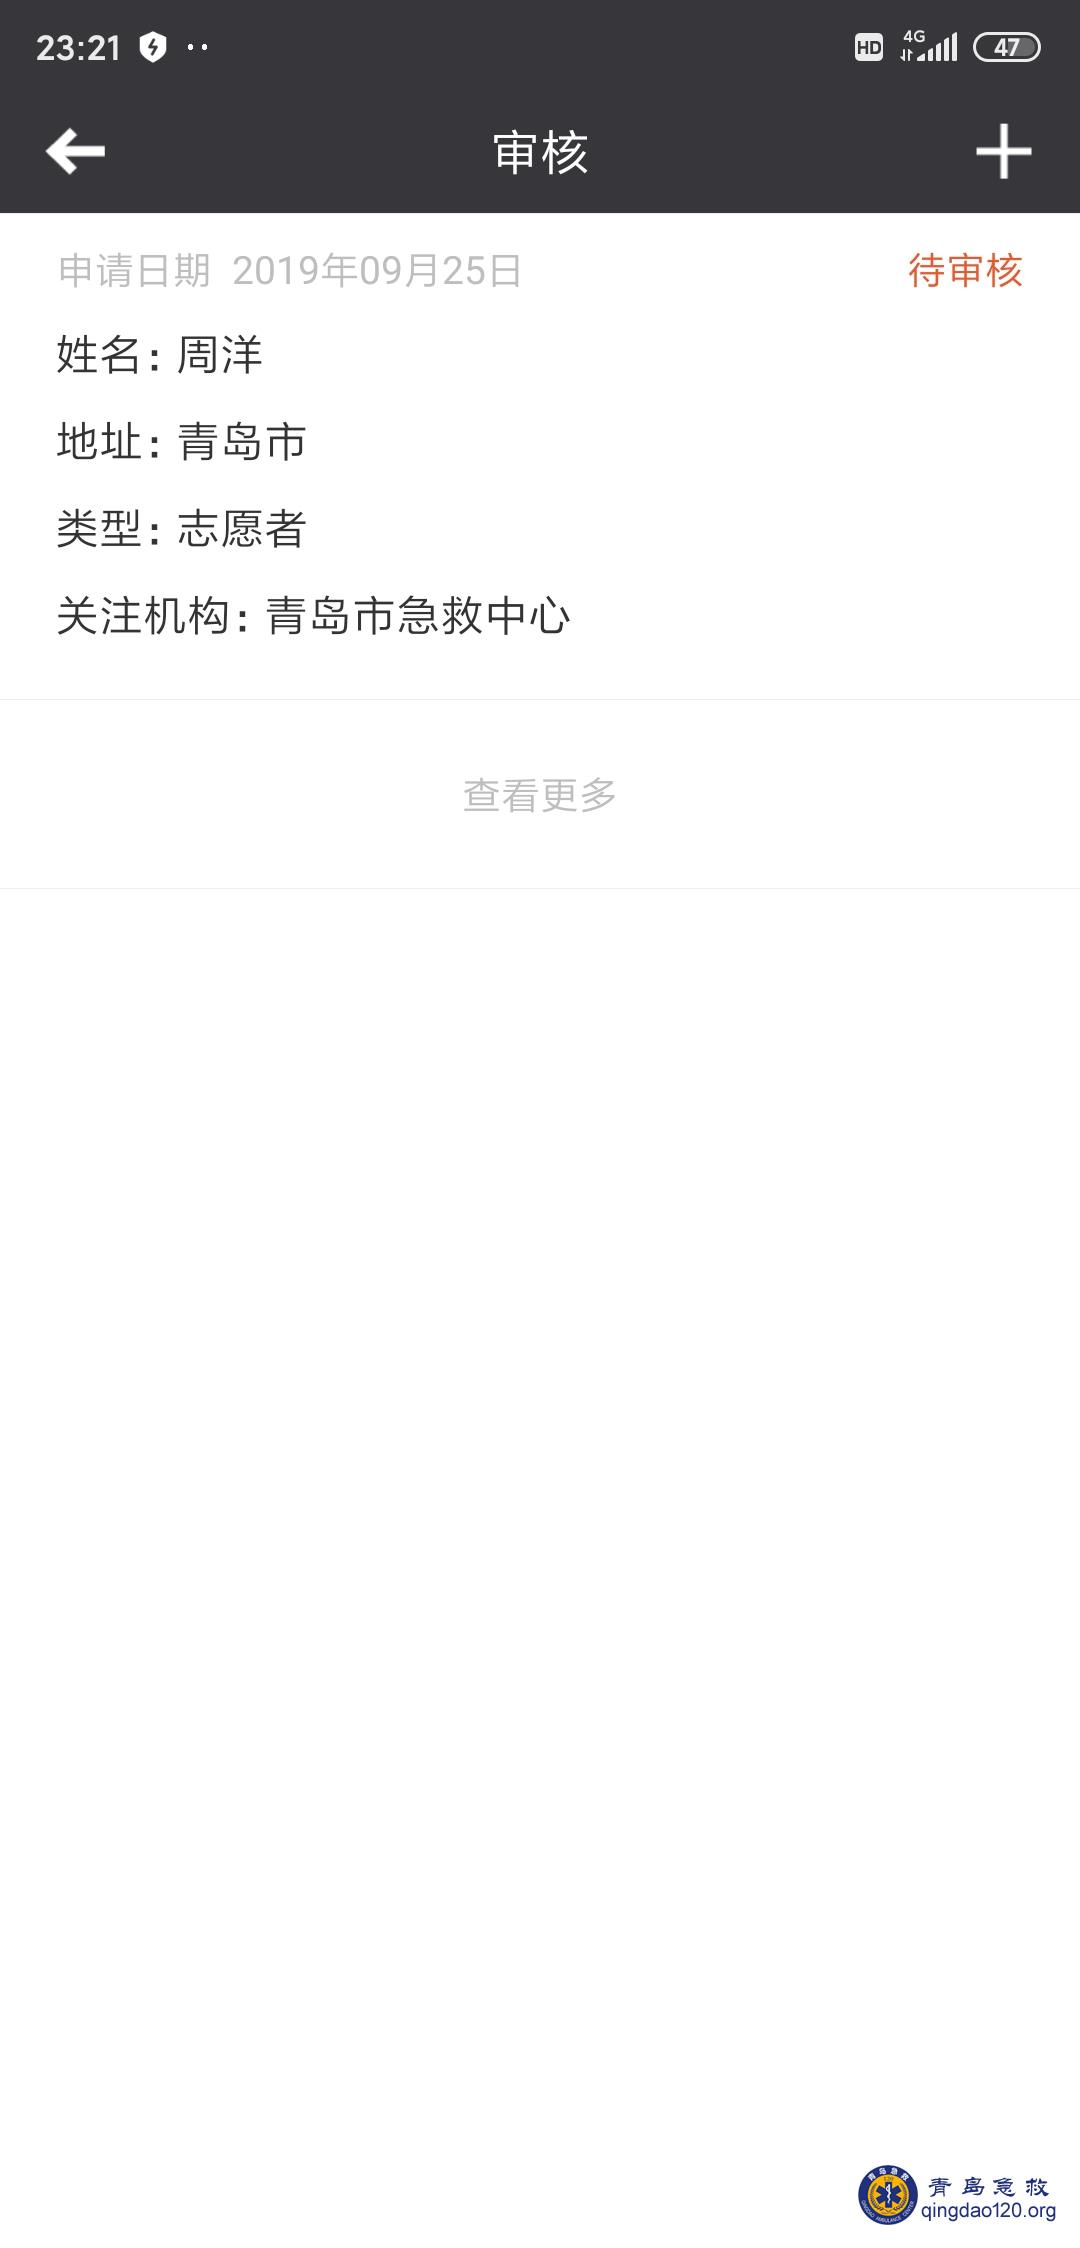 Screenshot_2019-12-24-23-21-31-494_com.ak.zhangkuo.ak_zk_template_mobile.ui.jpg